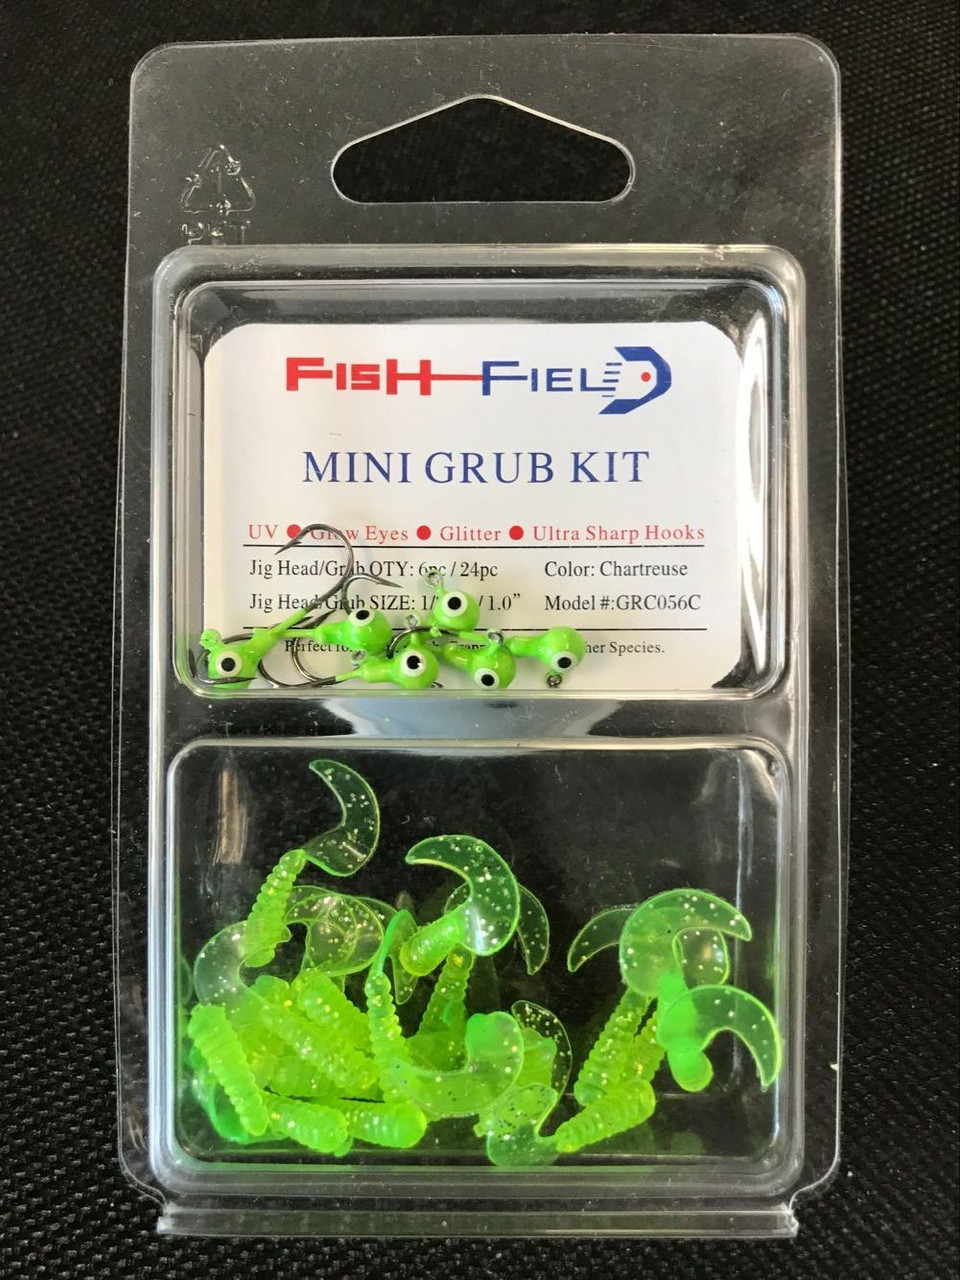 Fish-Field Mini Grub Kit